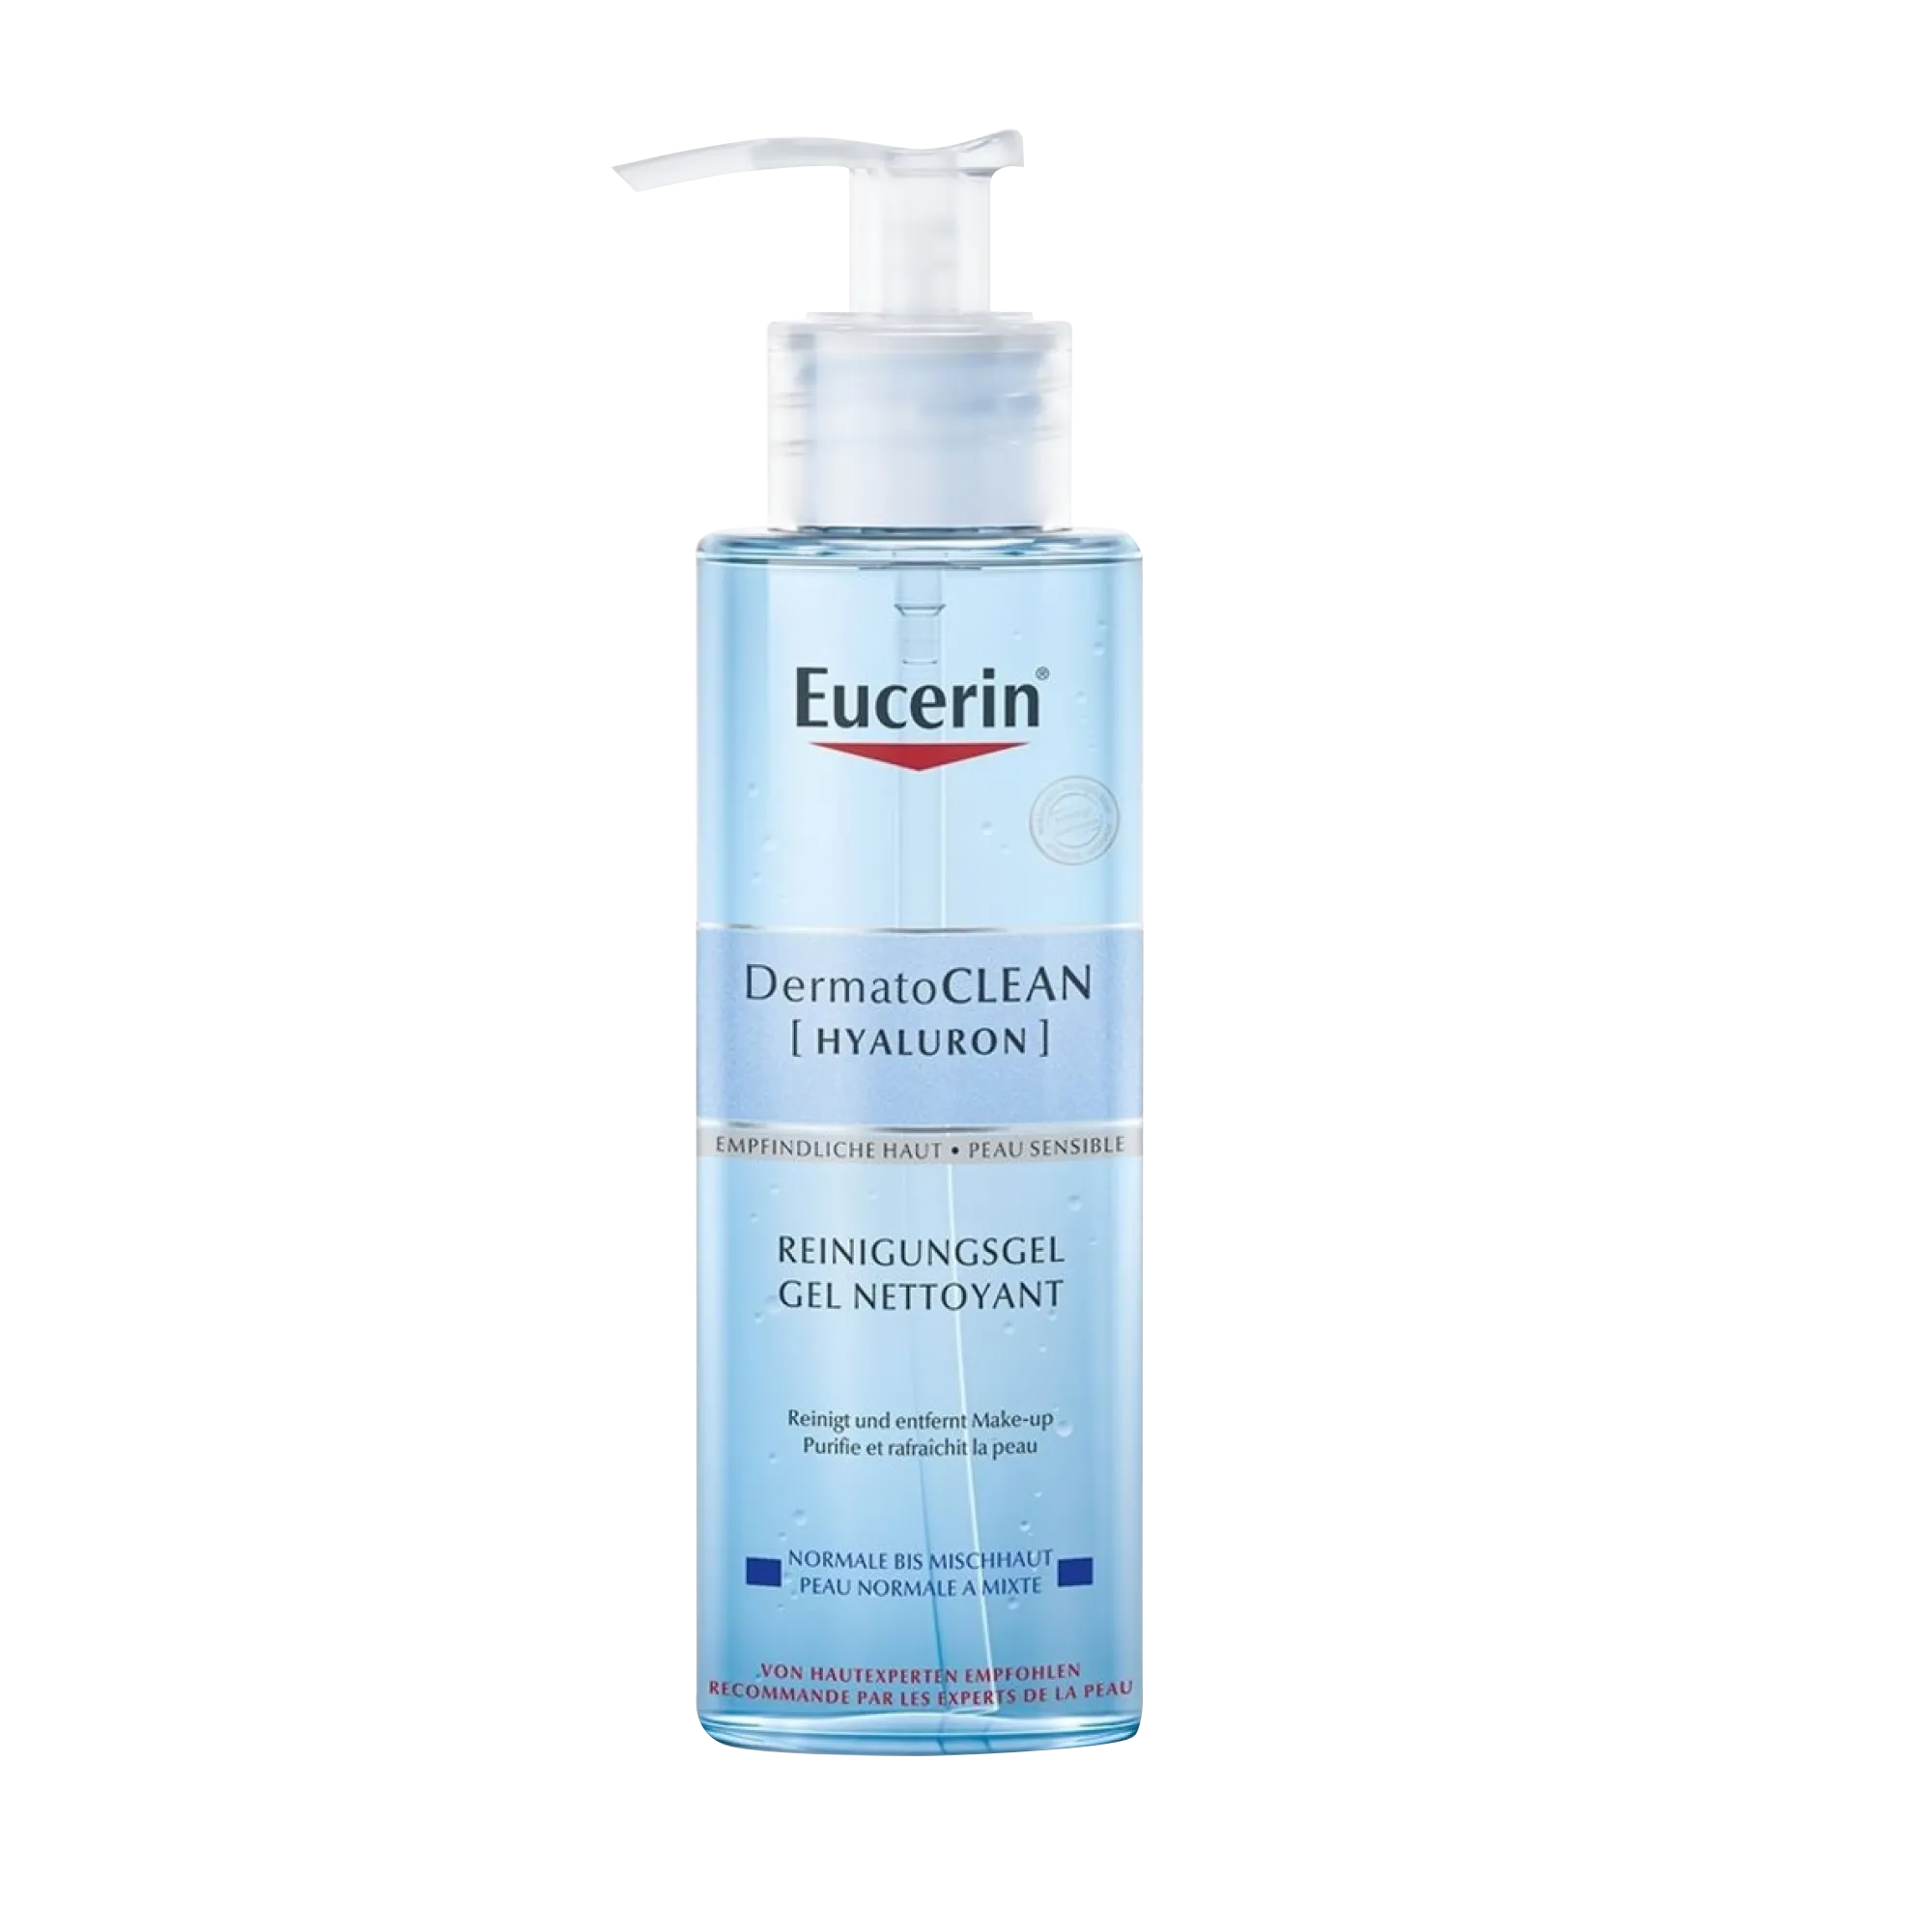 Eucerin DermatoCLEAN Hyaluron żel oczyszczający do każdego rodzaju skóry, 200 ml 